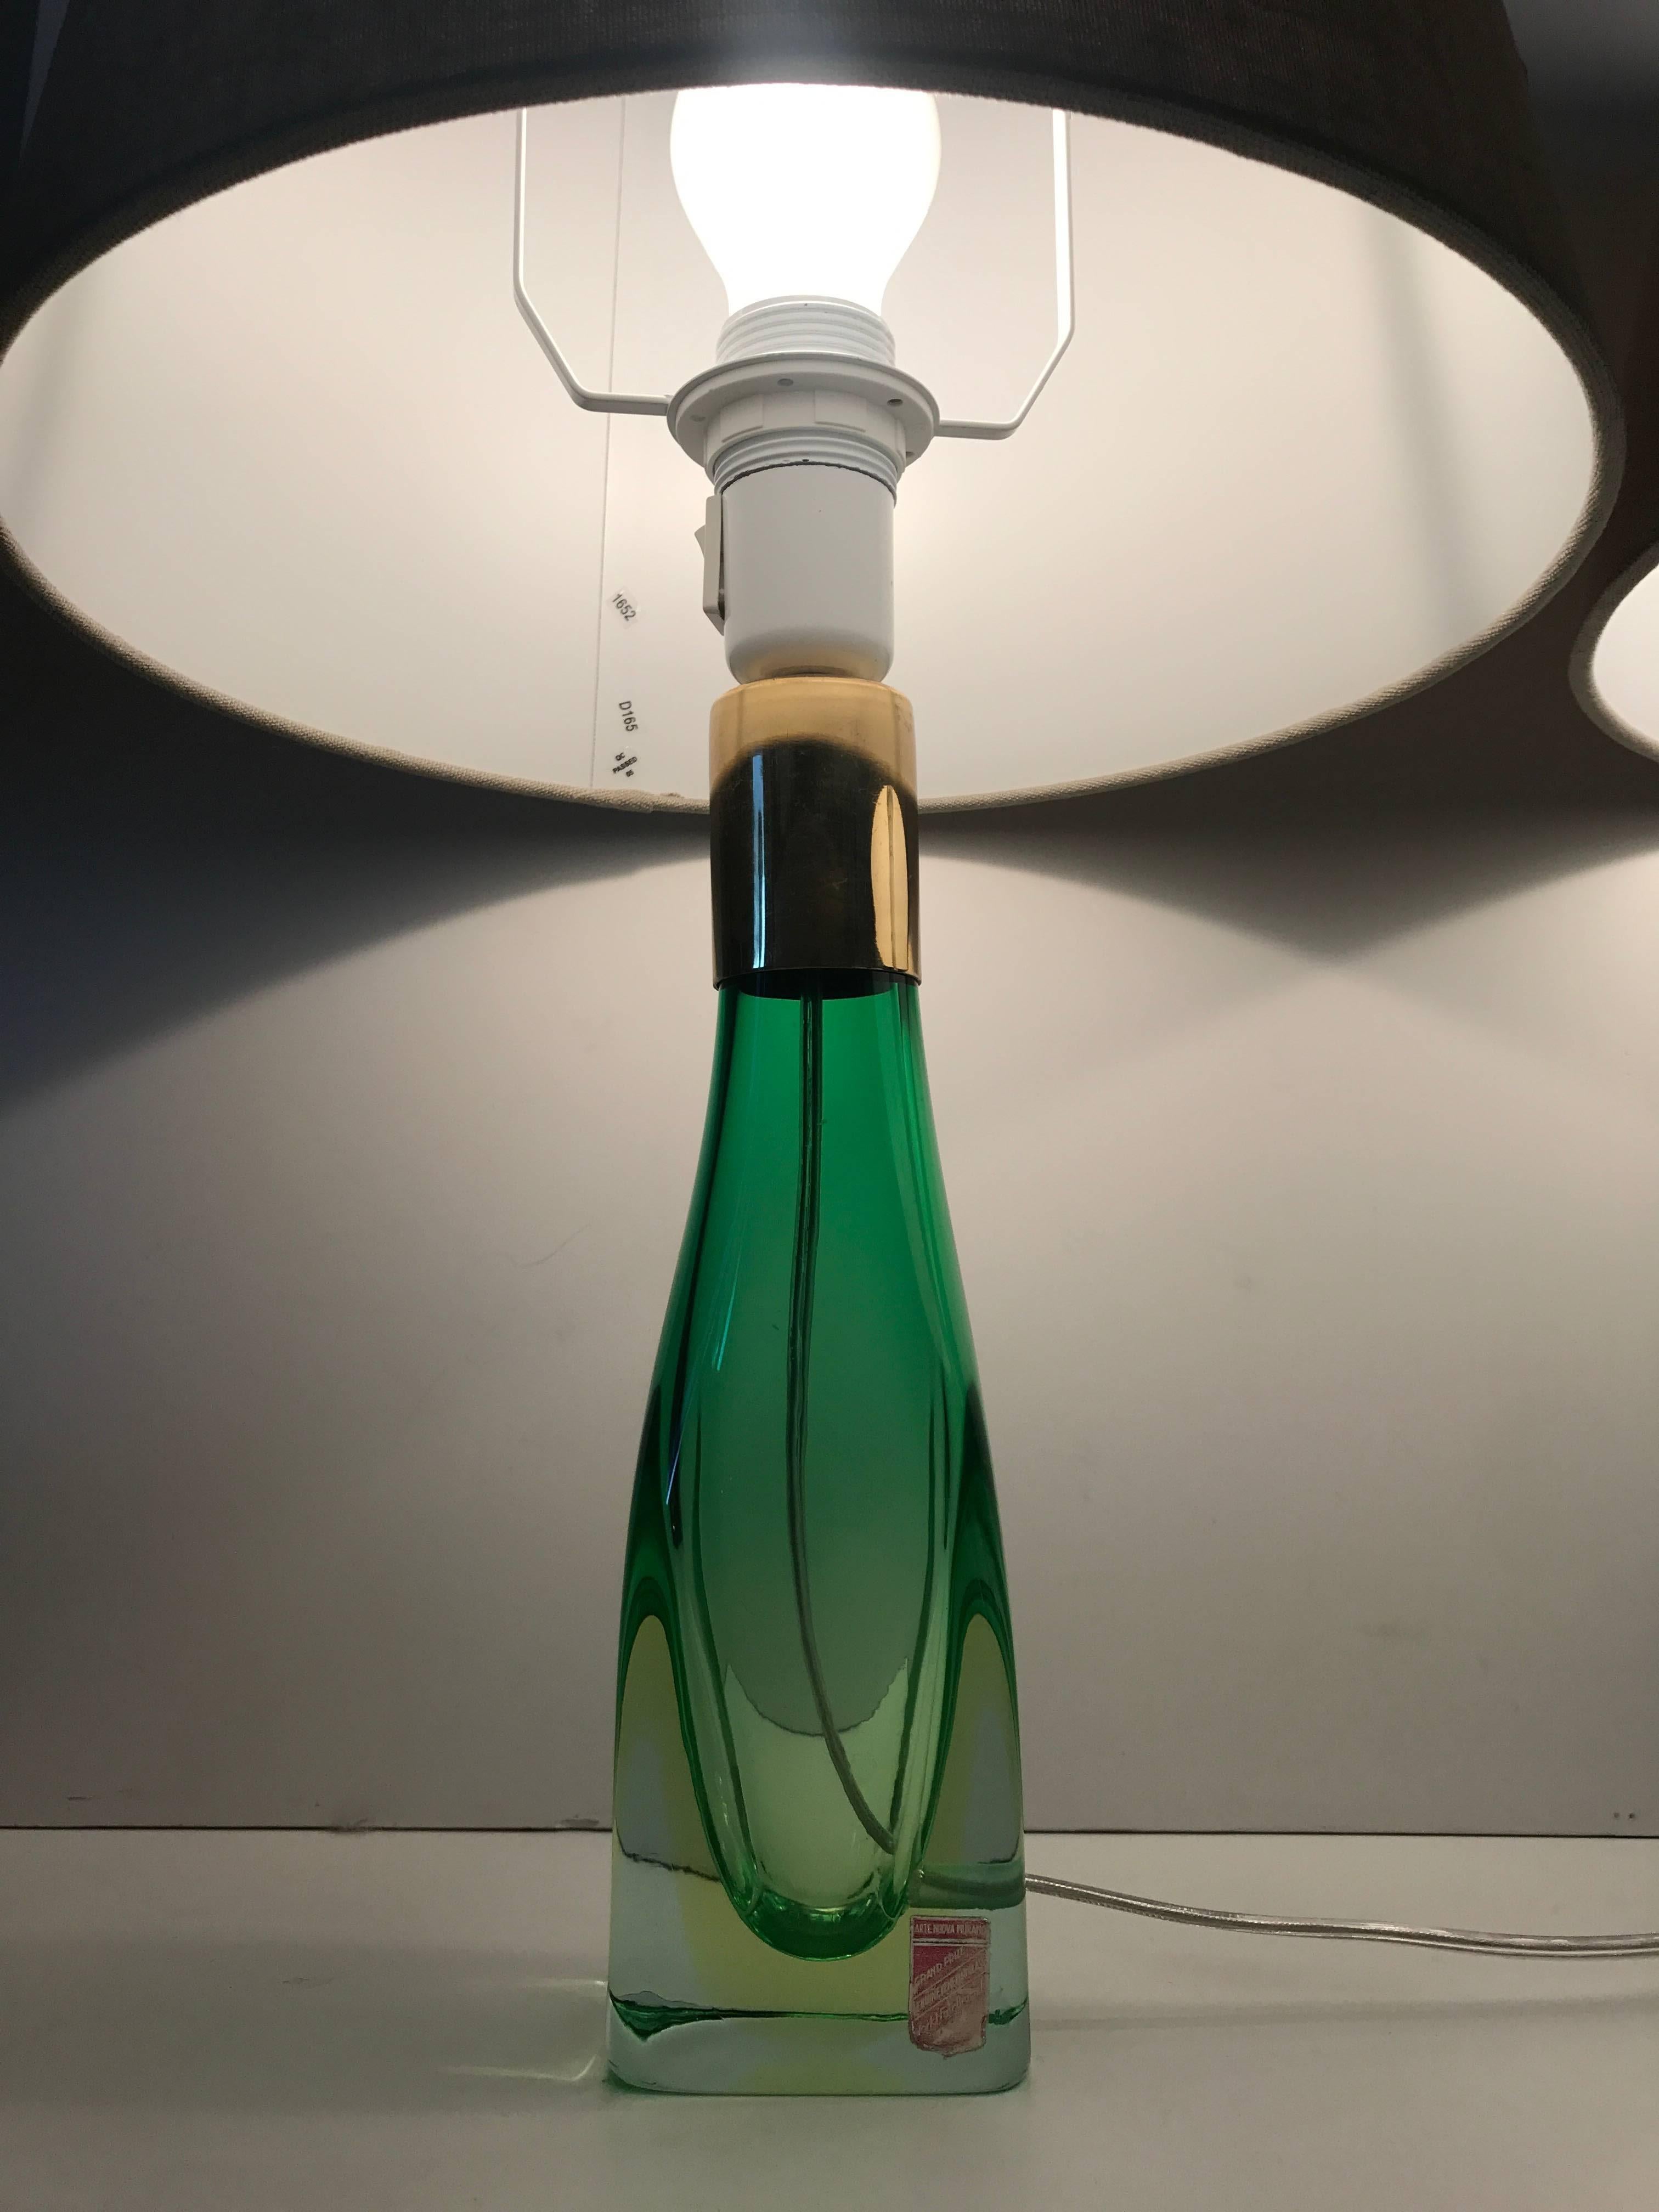 Pair of Italian Venetian Murano Art Glass Table Lamps 1958 Arte Nuova, Murano 1